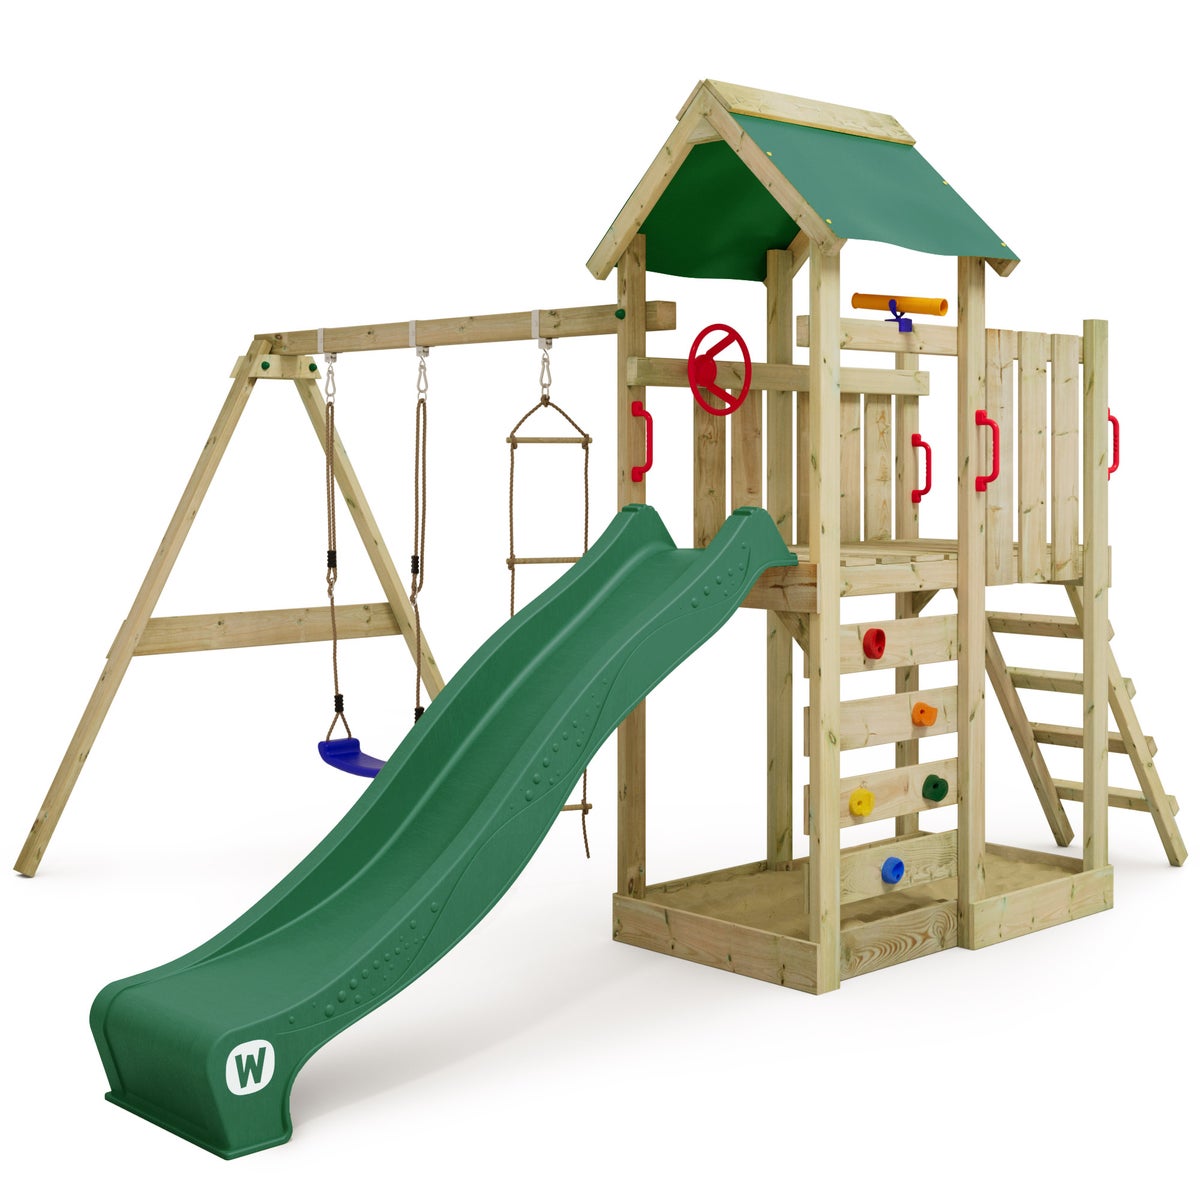 WICKEY Spielturm Klettergerüst MultiFlyer mit Schaukel und Rutsche, Kletterturm mit Sandkasten, Leiter und Spiel-Zubehör - grün